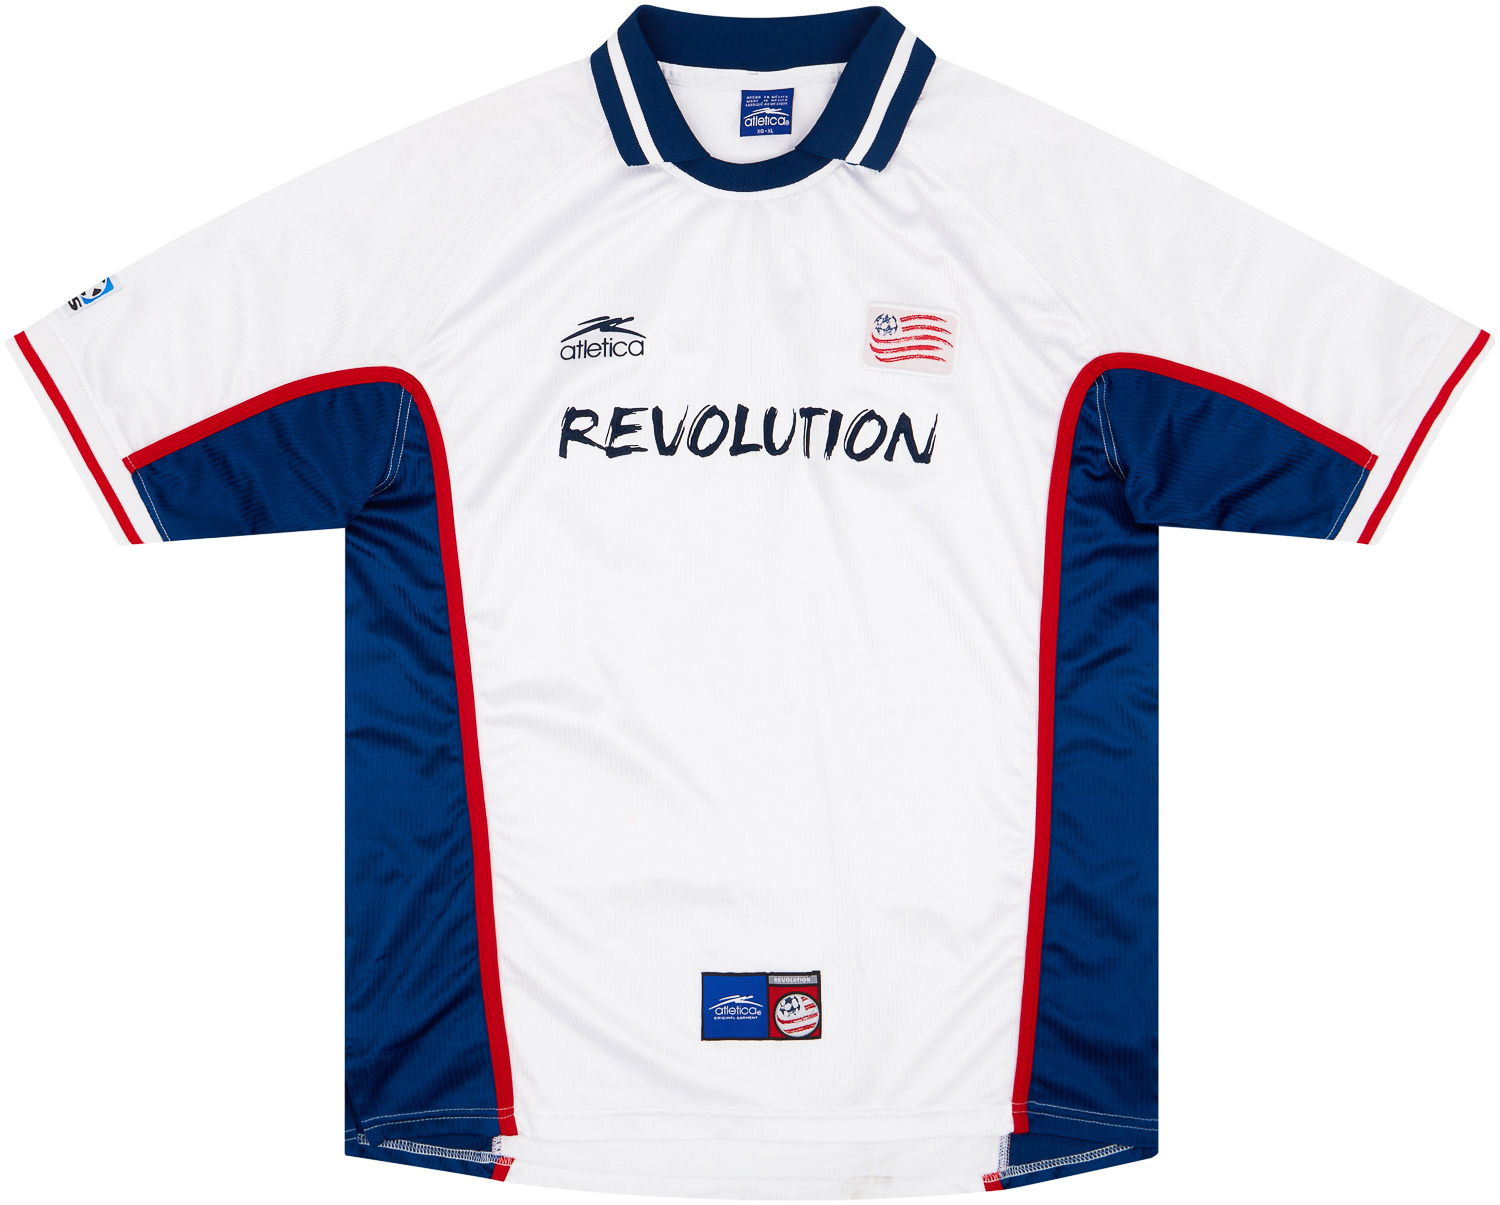 New England Revolution Special football shirt 2018.